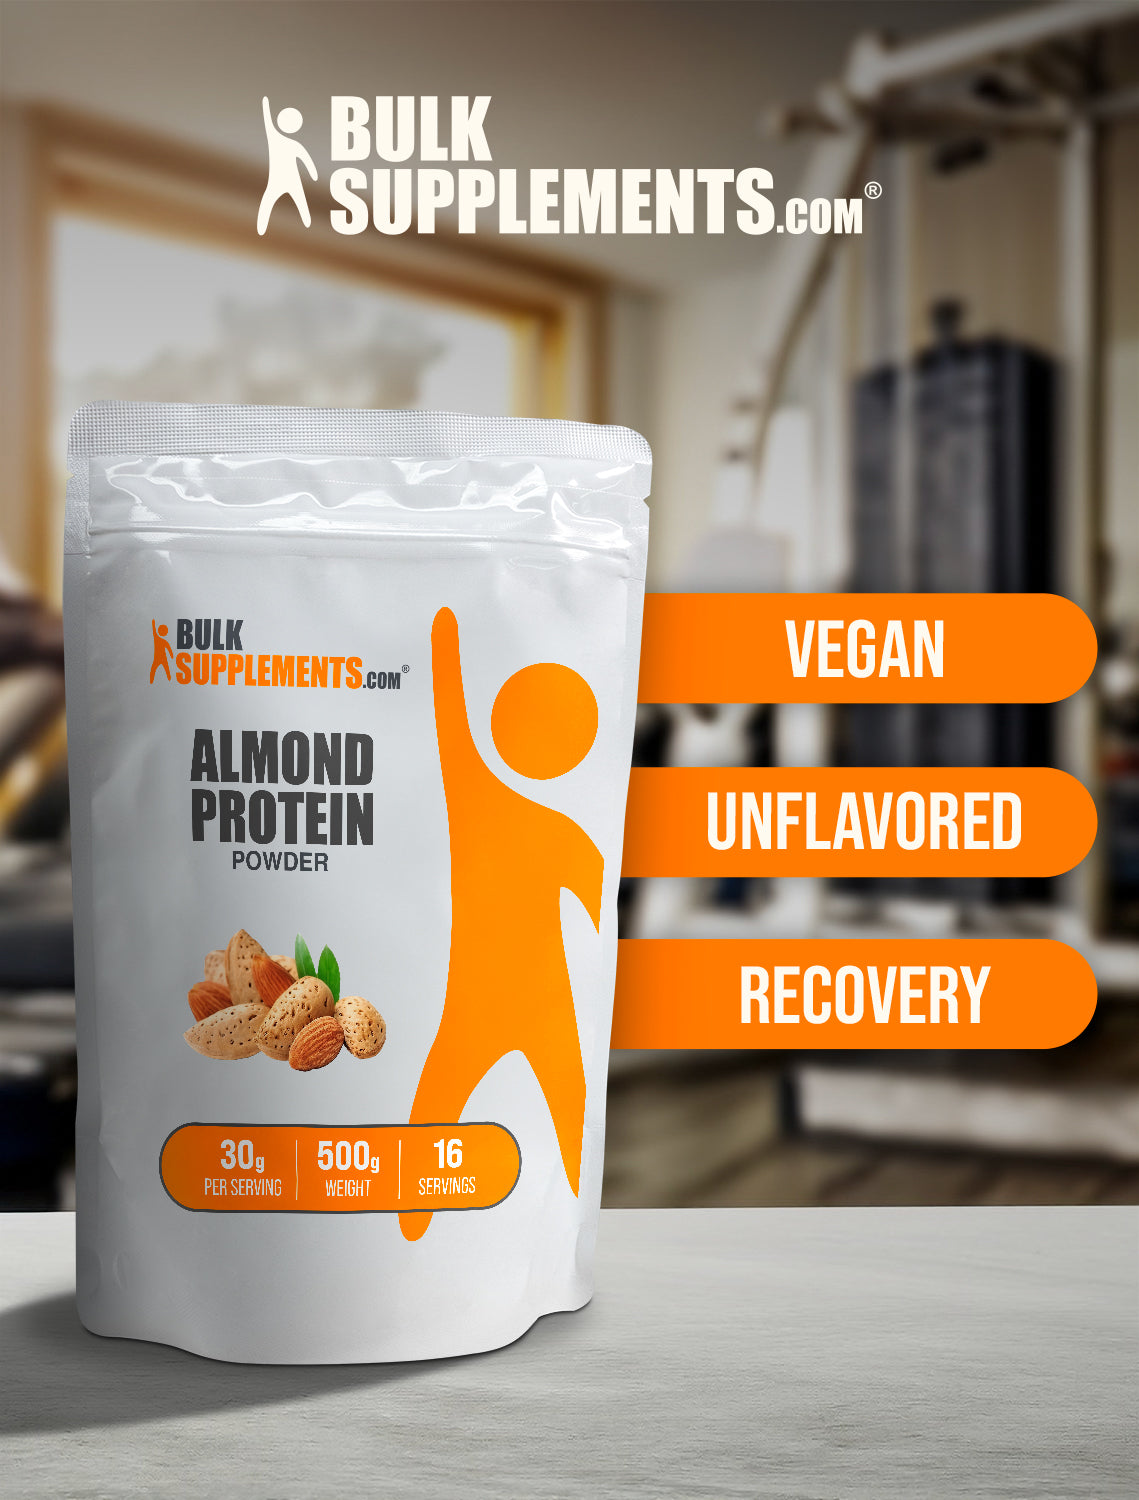 Almond protein powder 500g keywords image